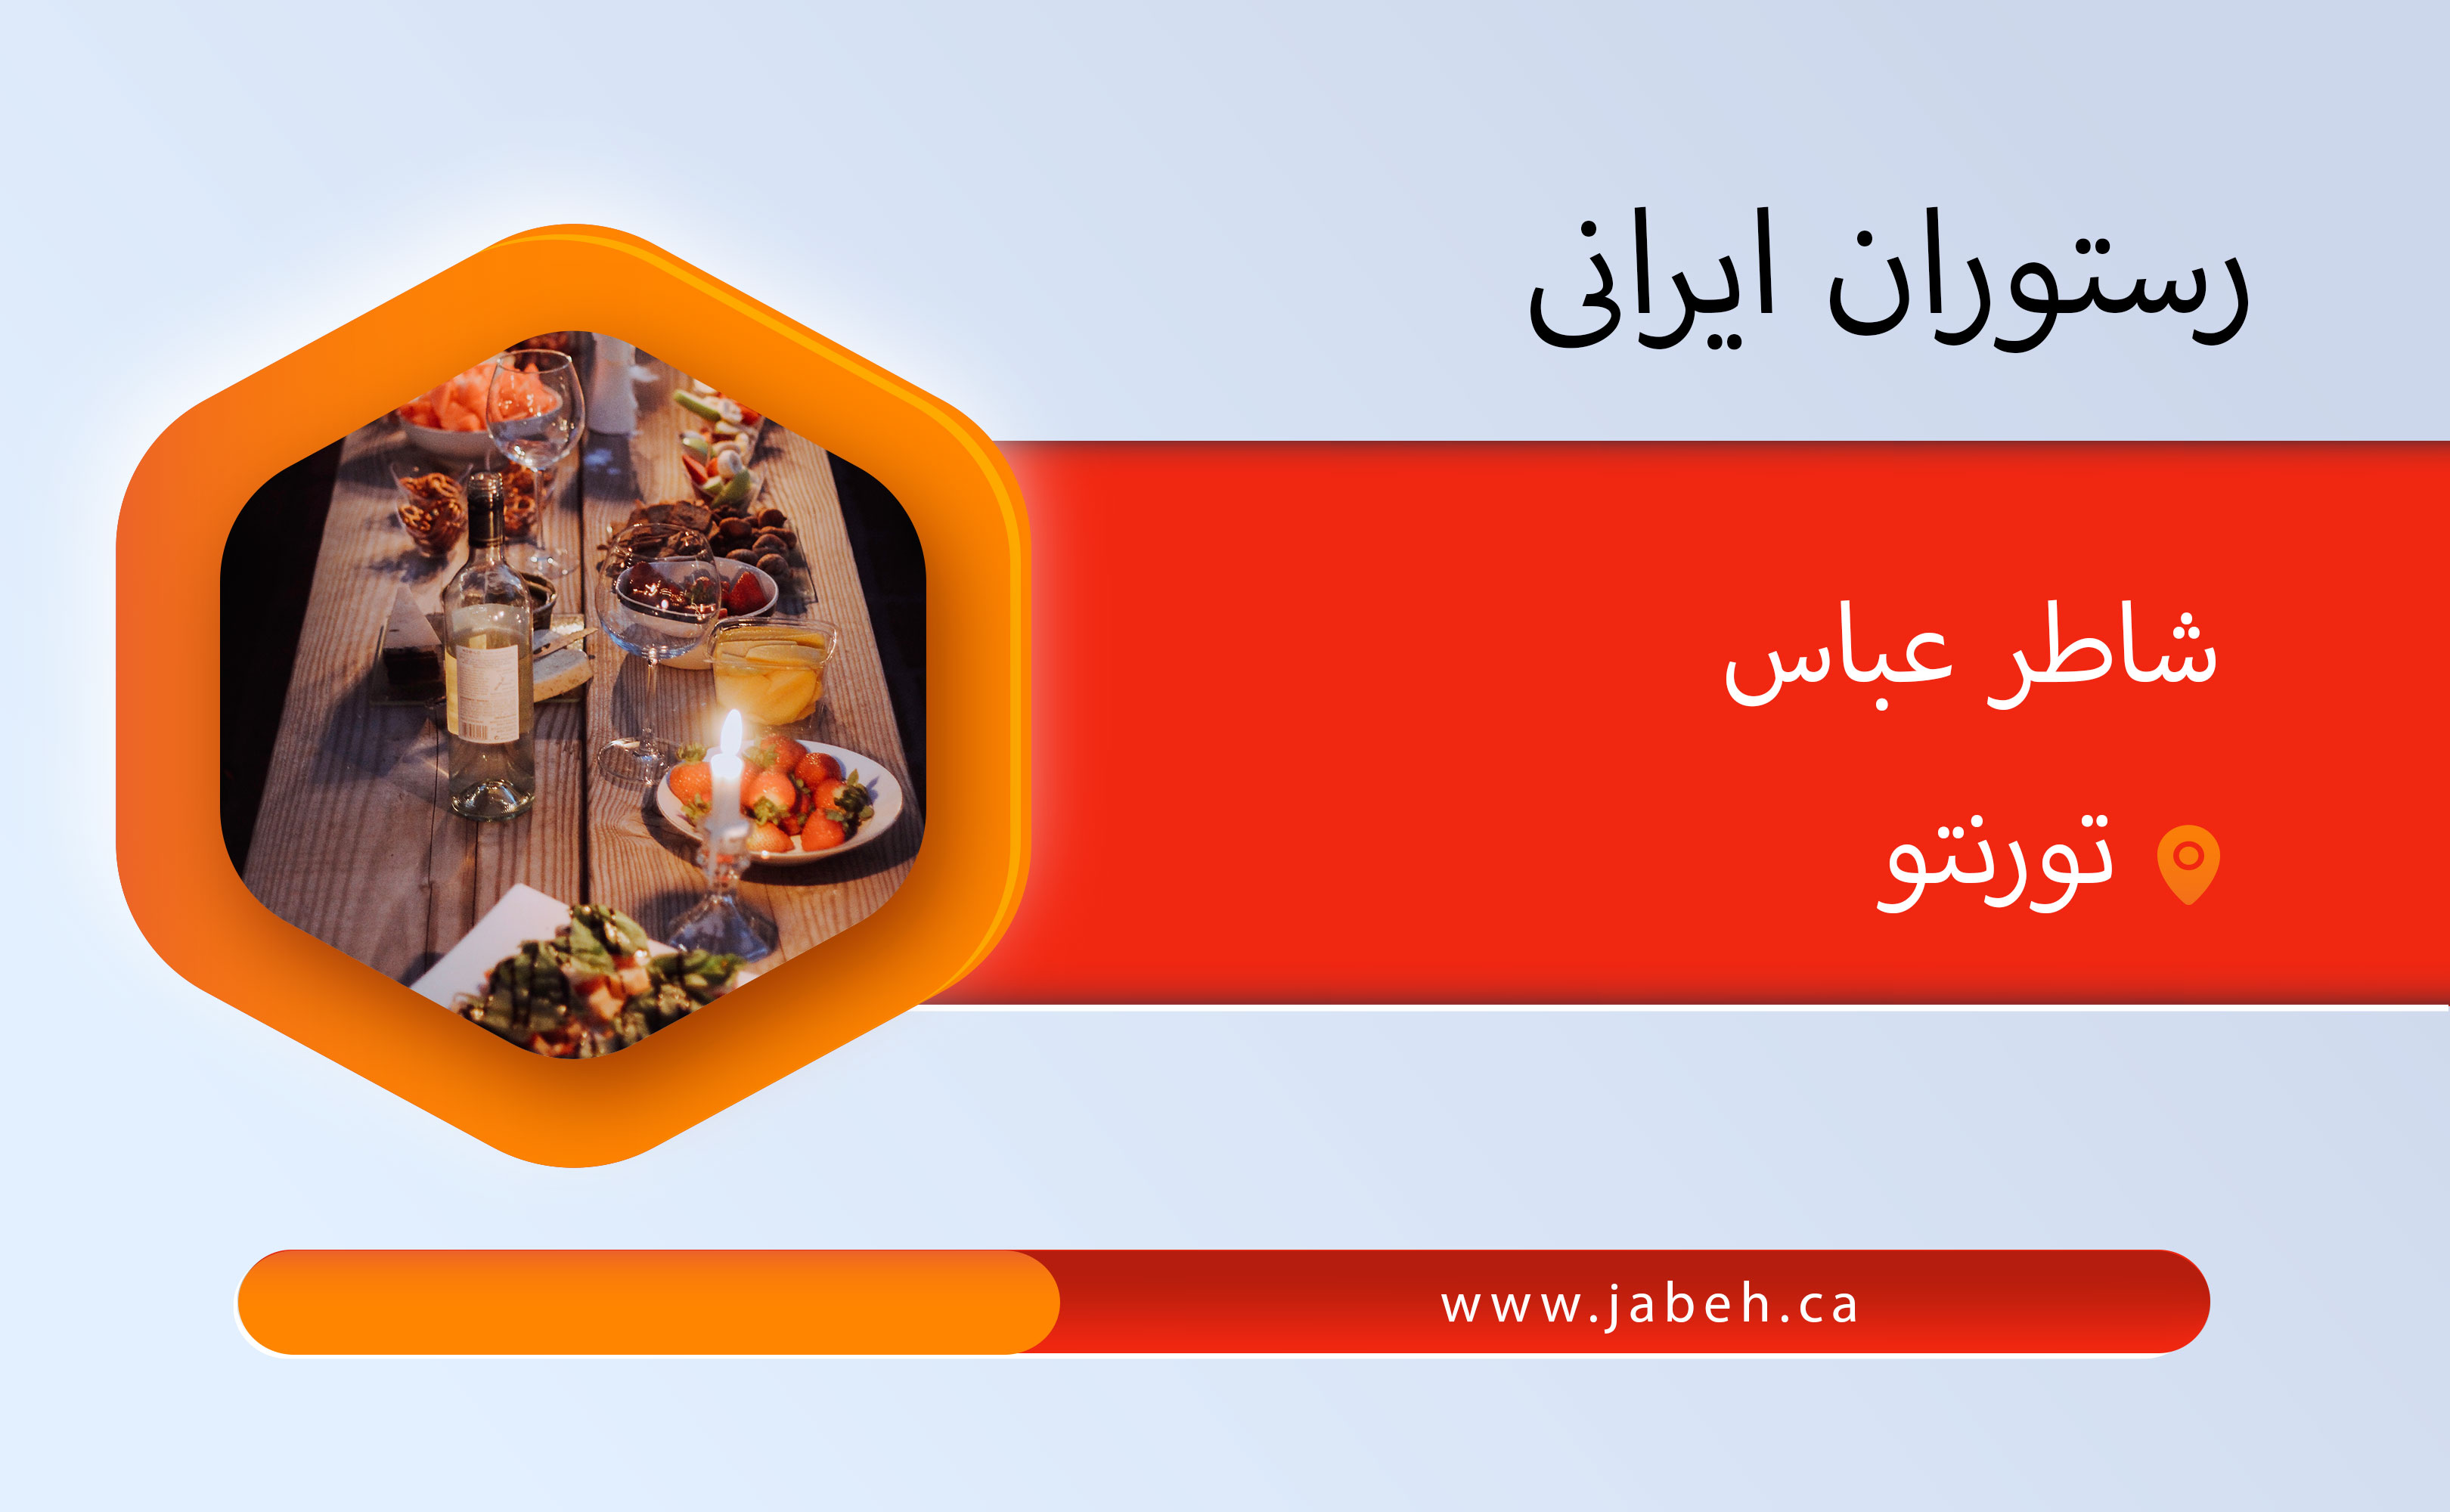 رستوران ایرانی شاطر عباس در تورنتو